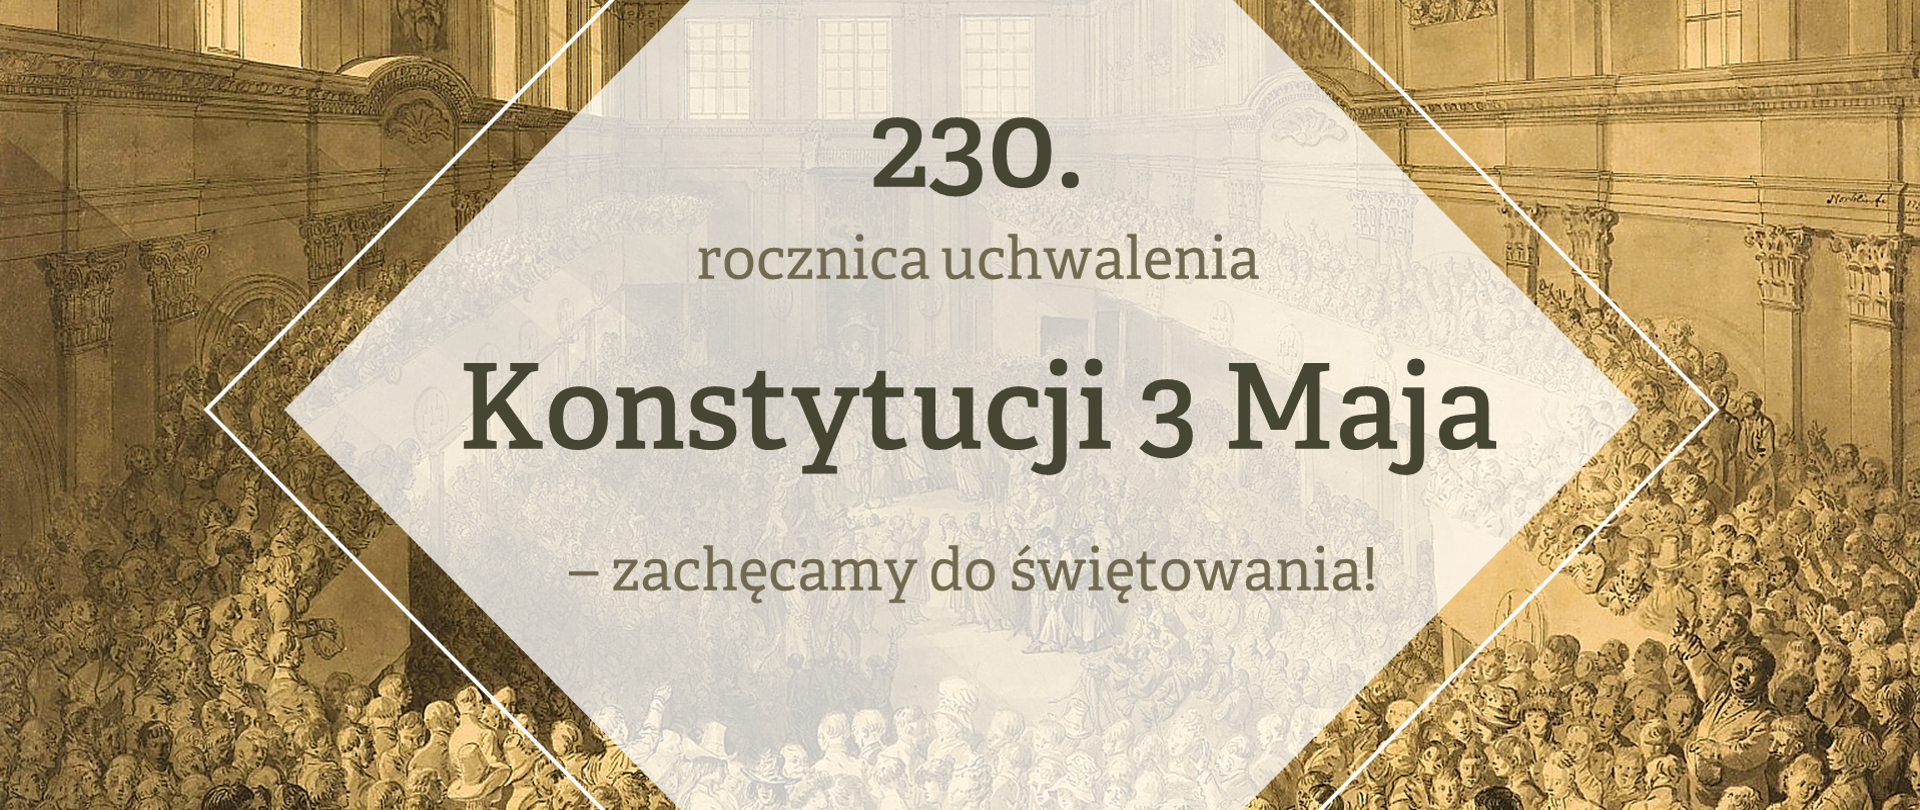 Grafika z tekstem: "230. rocznica uchwalenia Konstytucji 3 Maja – zachęcamy do świętowania!"